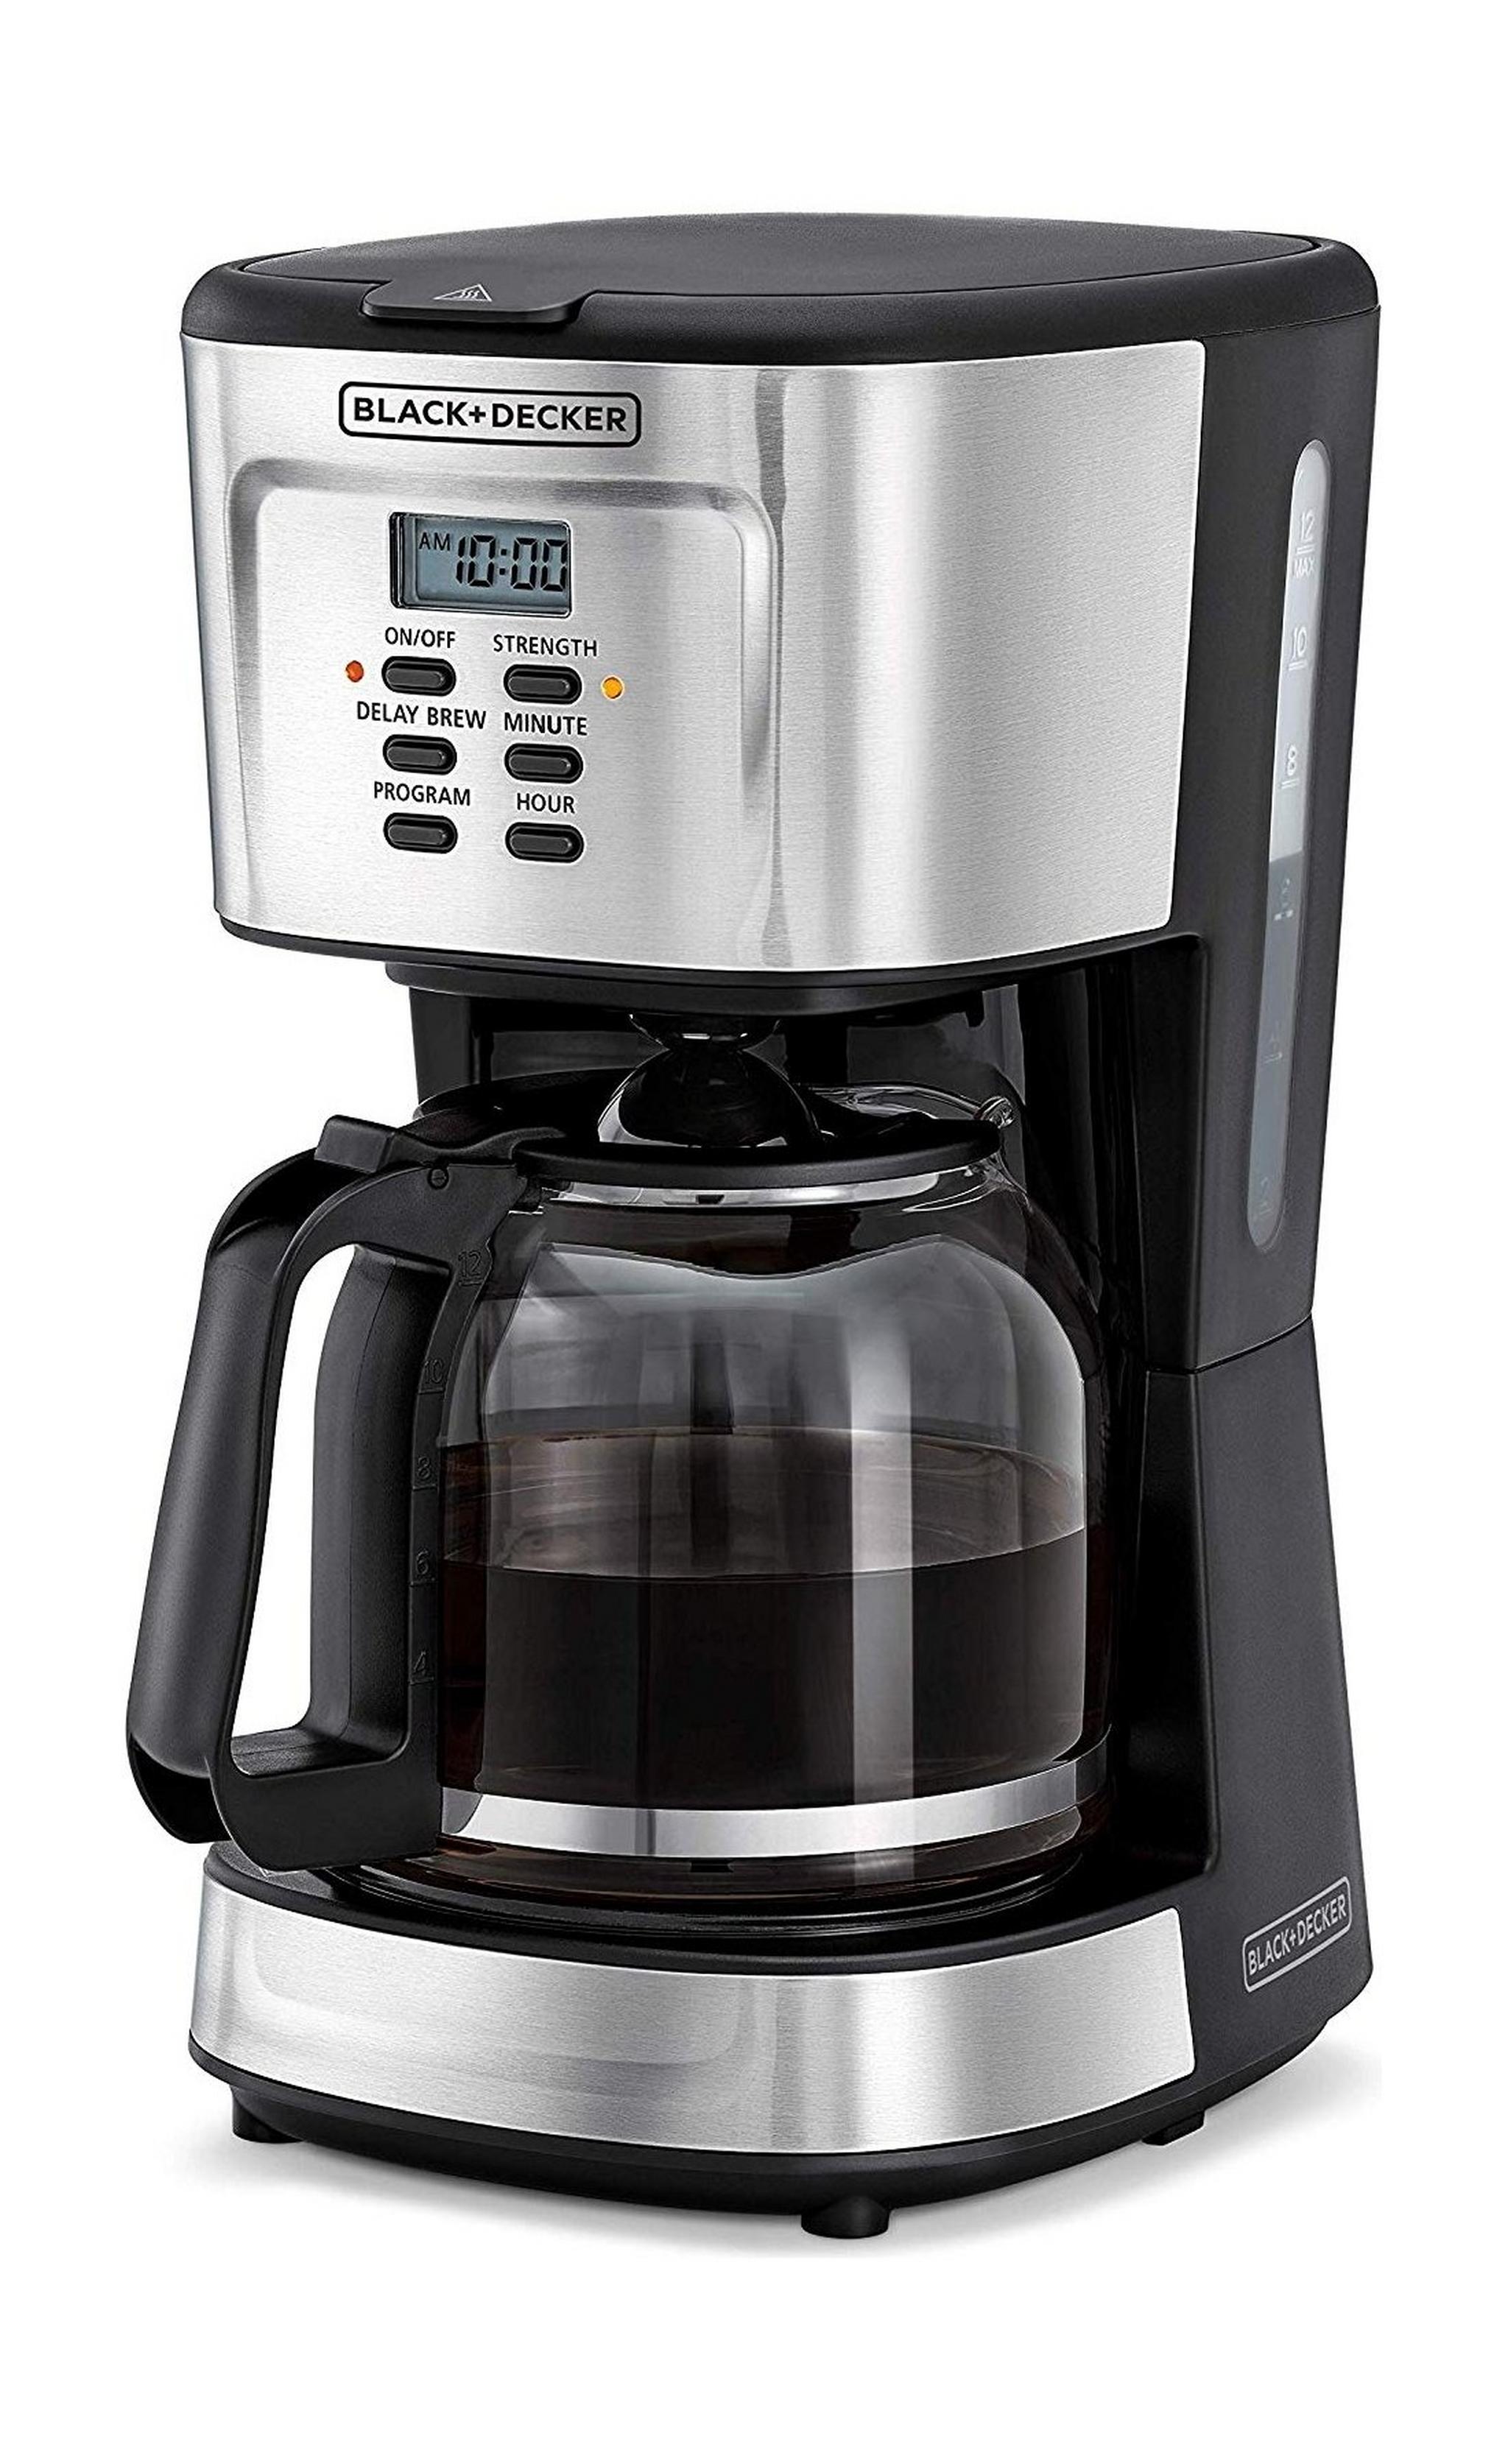 ماكينة تحضير القهوة  بقوة 900 واط من بلاك + ديكر دريب DCM85-B5